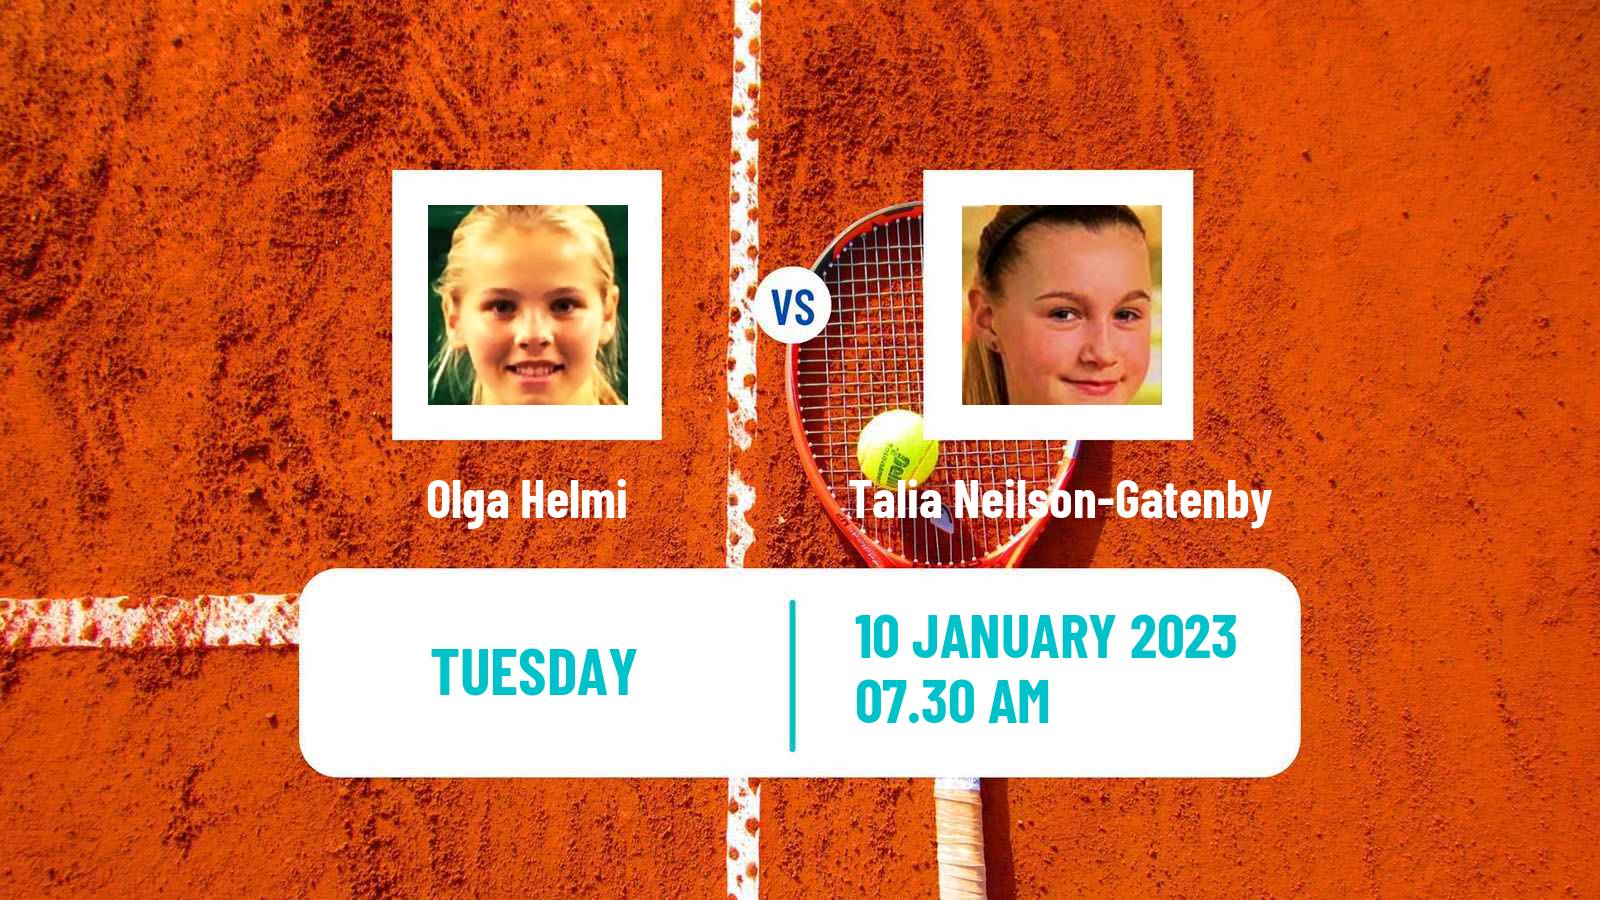 Tennis ITF Tournaments Olga Helmi - Talia Neilson-Gatenby